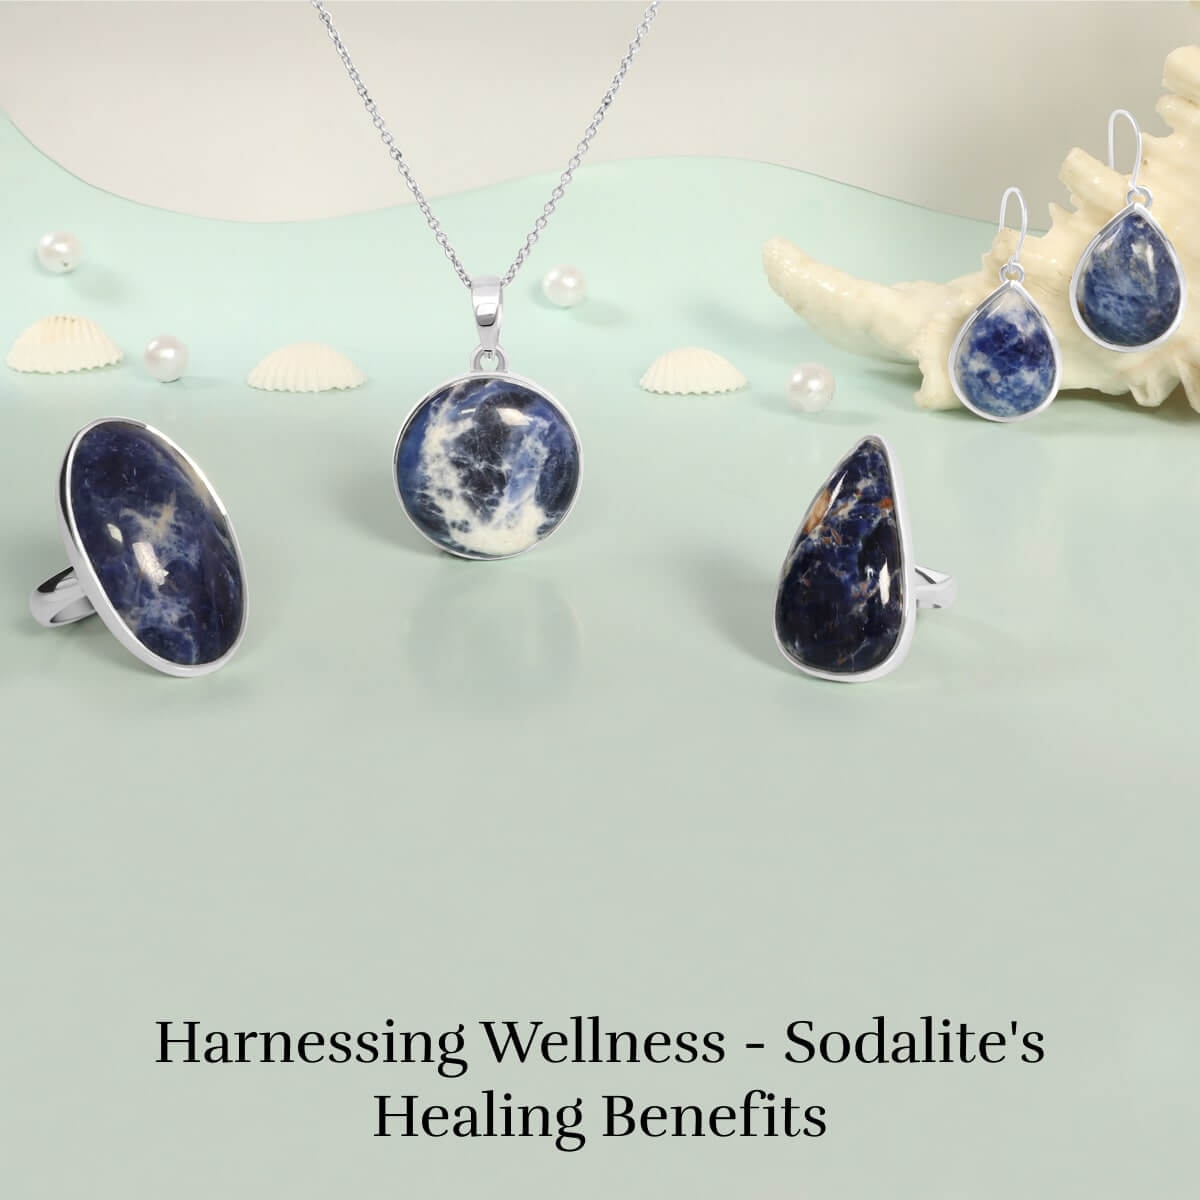 Sodalite stone Healing properties